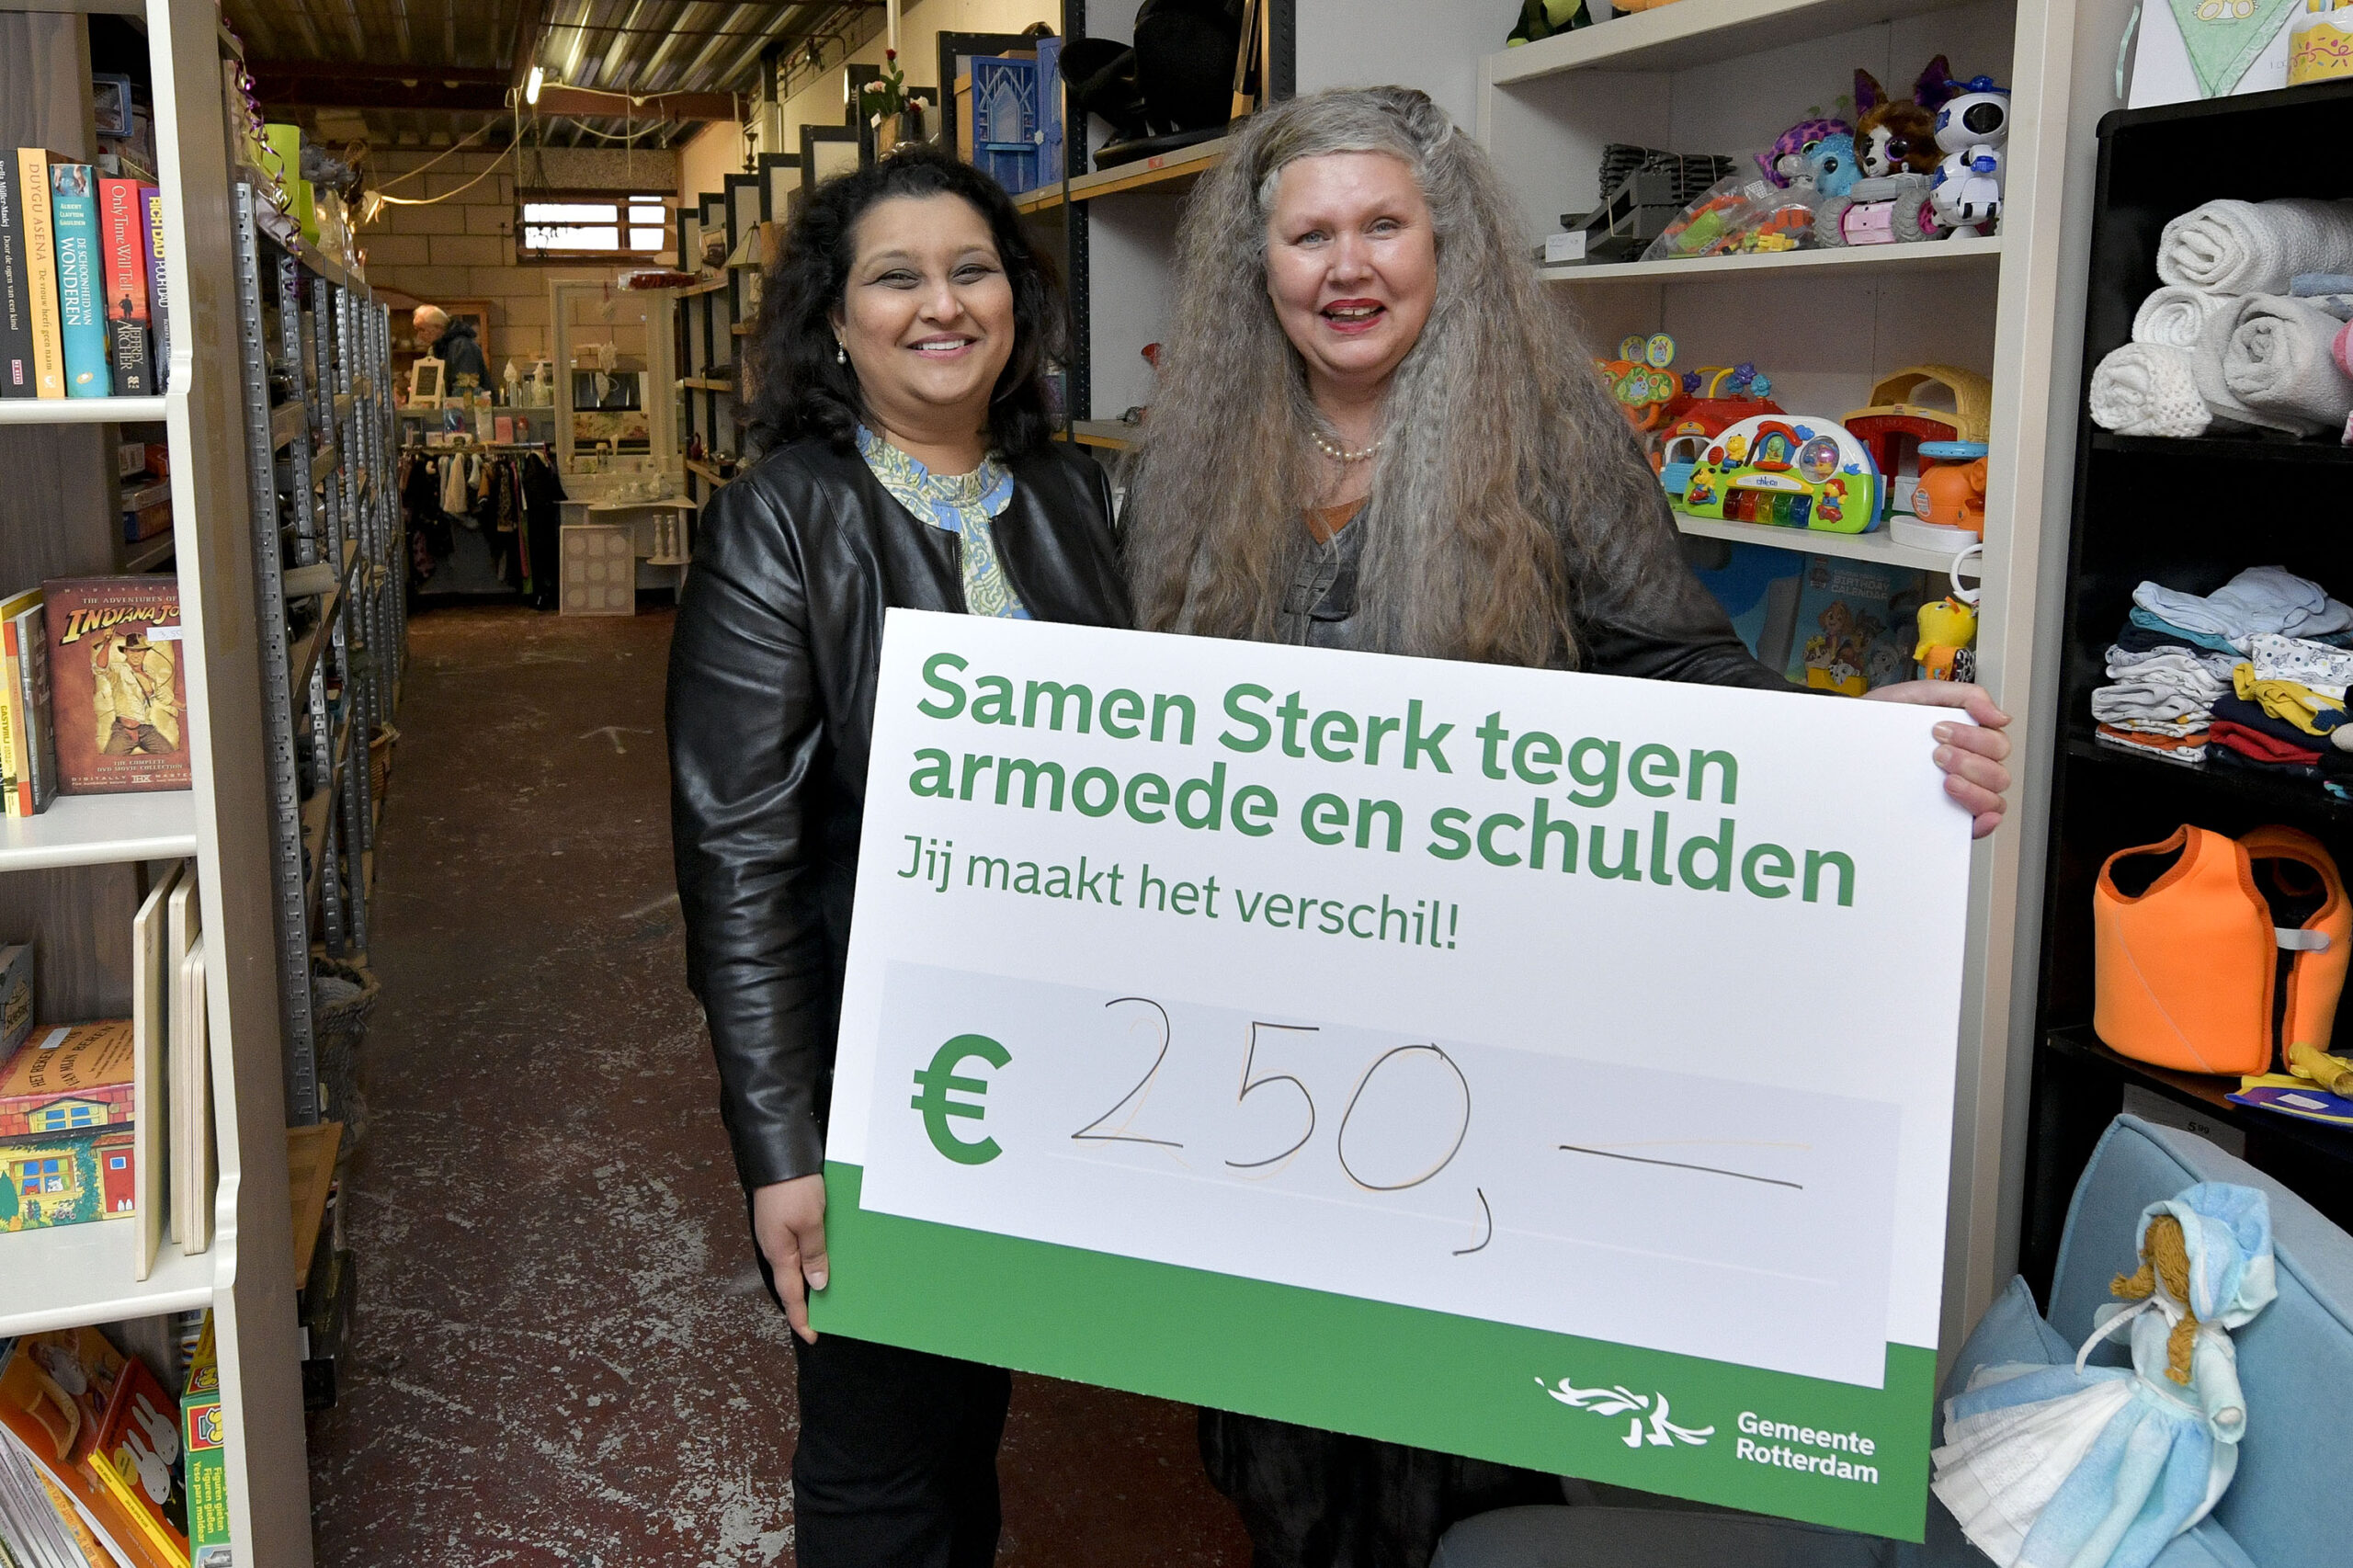 Rotterdam project backs anti-poverty champions